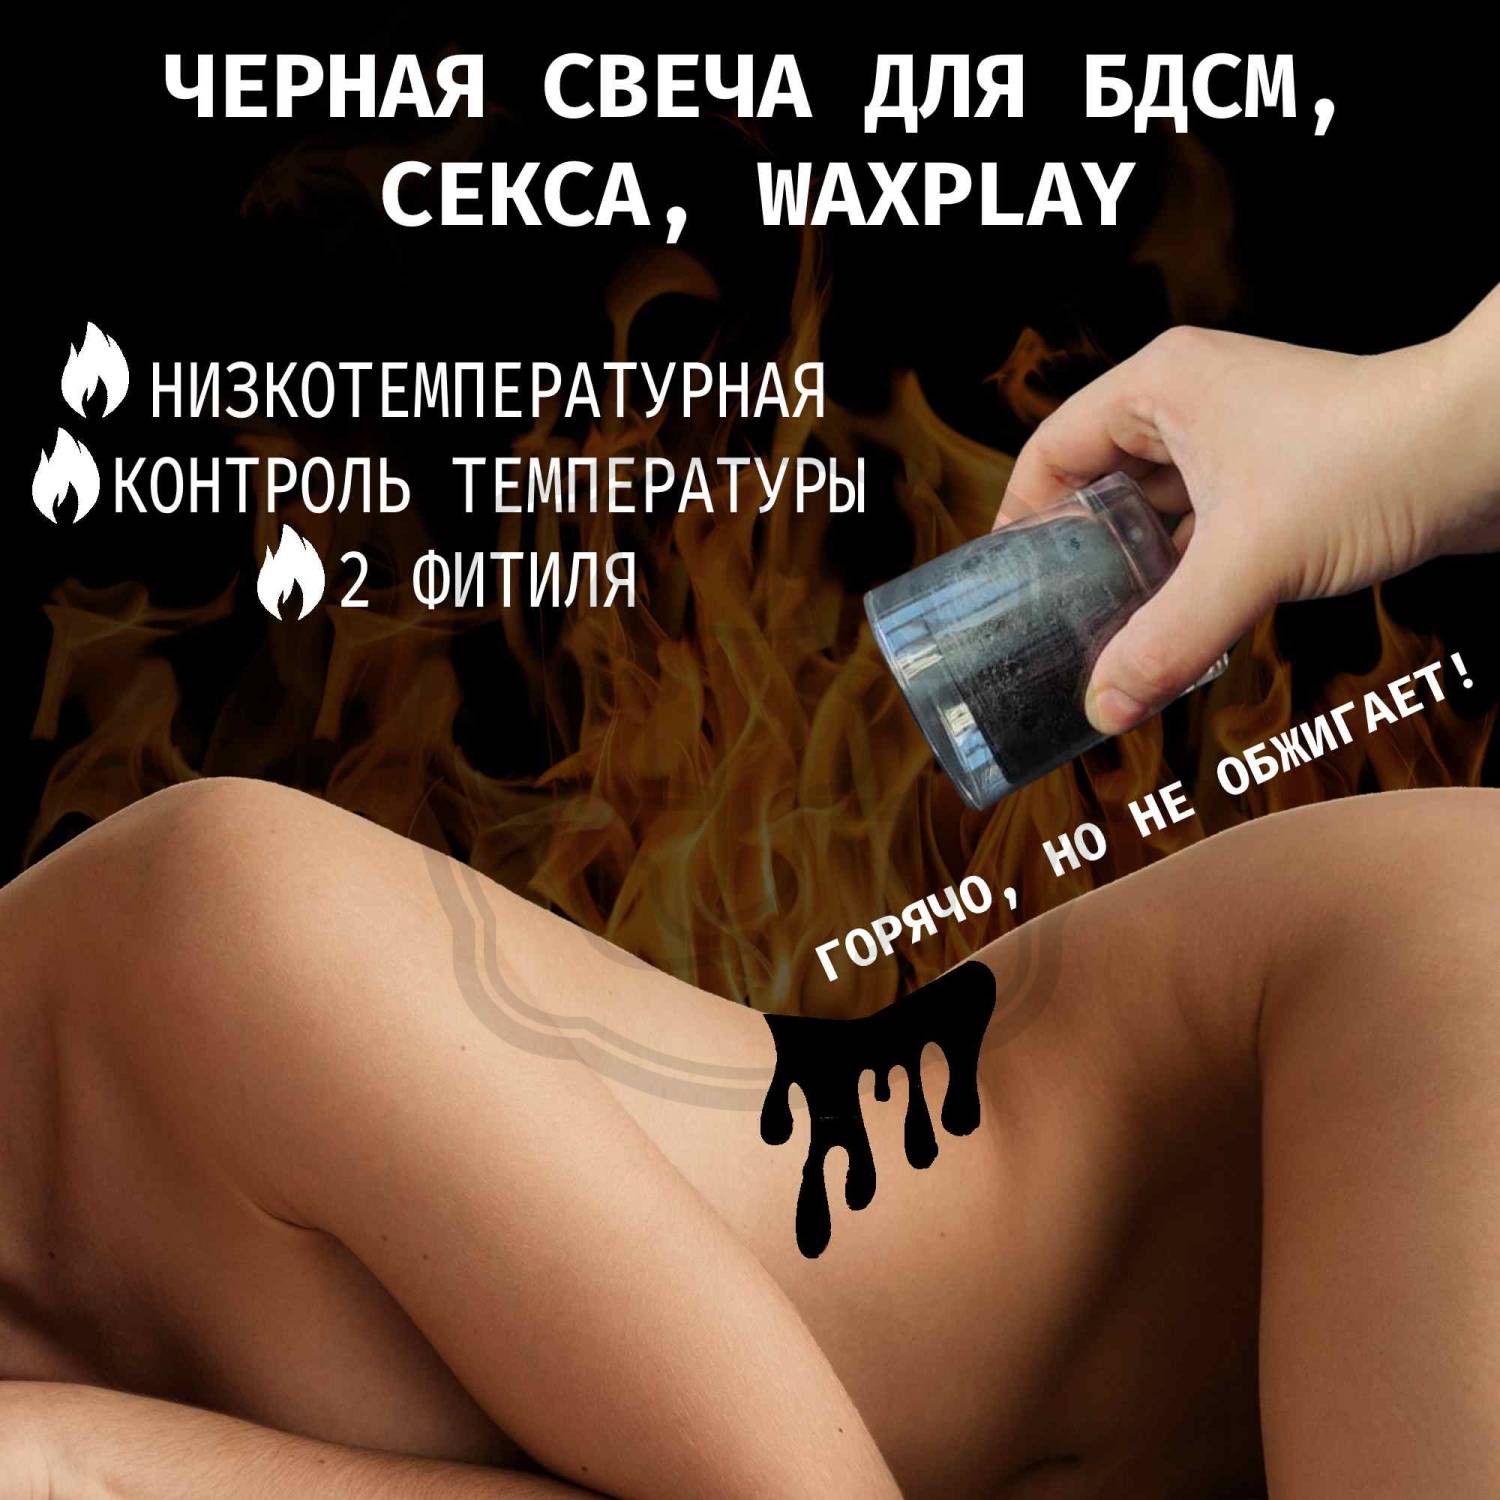 Ваксплей (waxplay). Свечи для БДСМ и интимного массажа